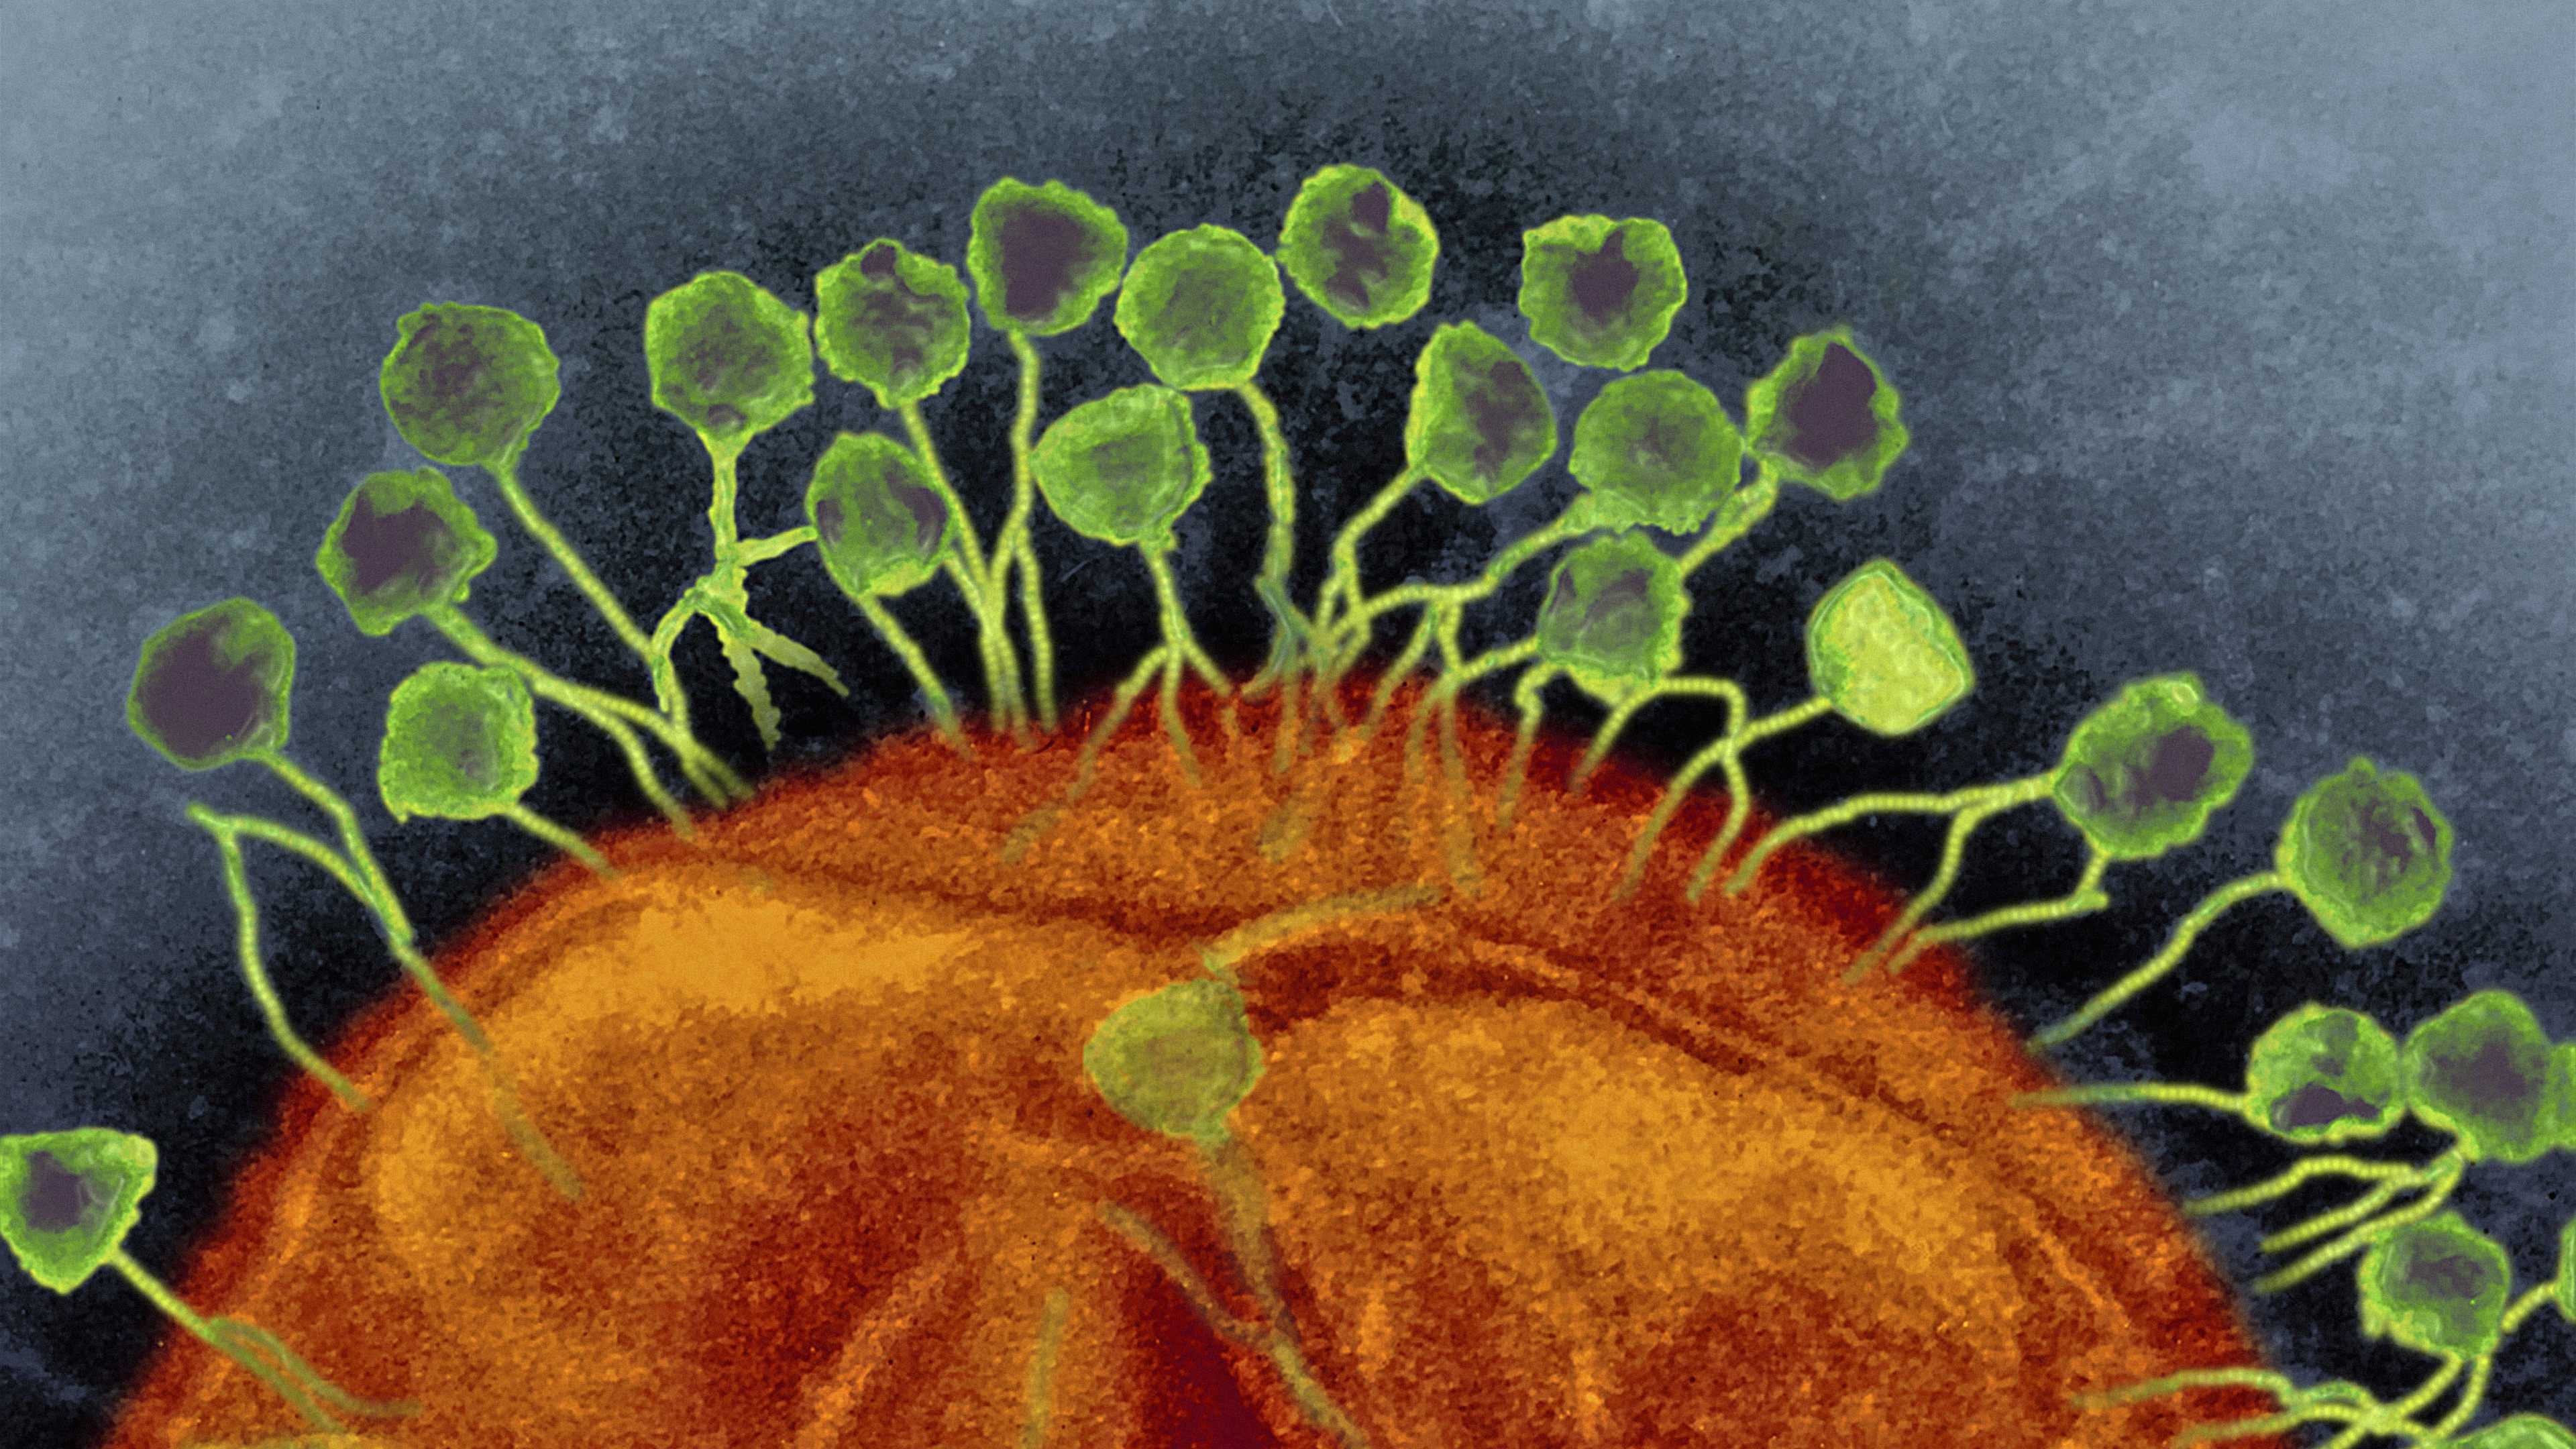 Бактерий.нет: как фаги влияют на организм